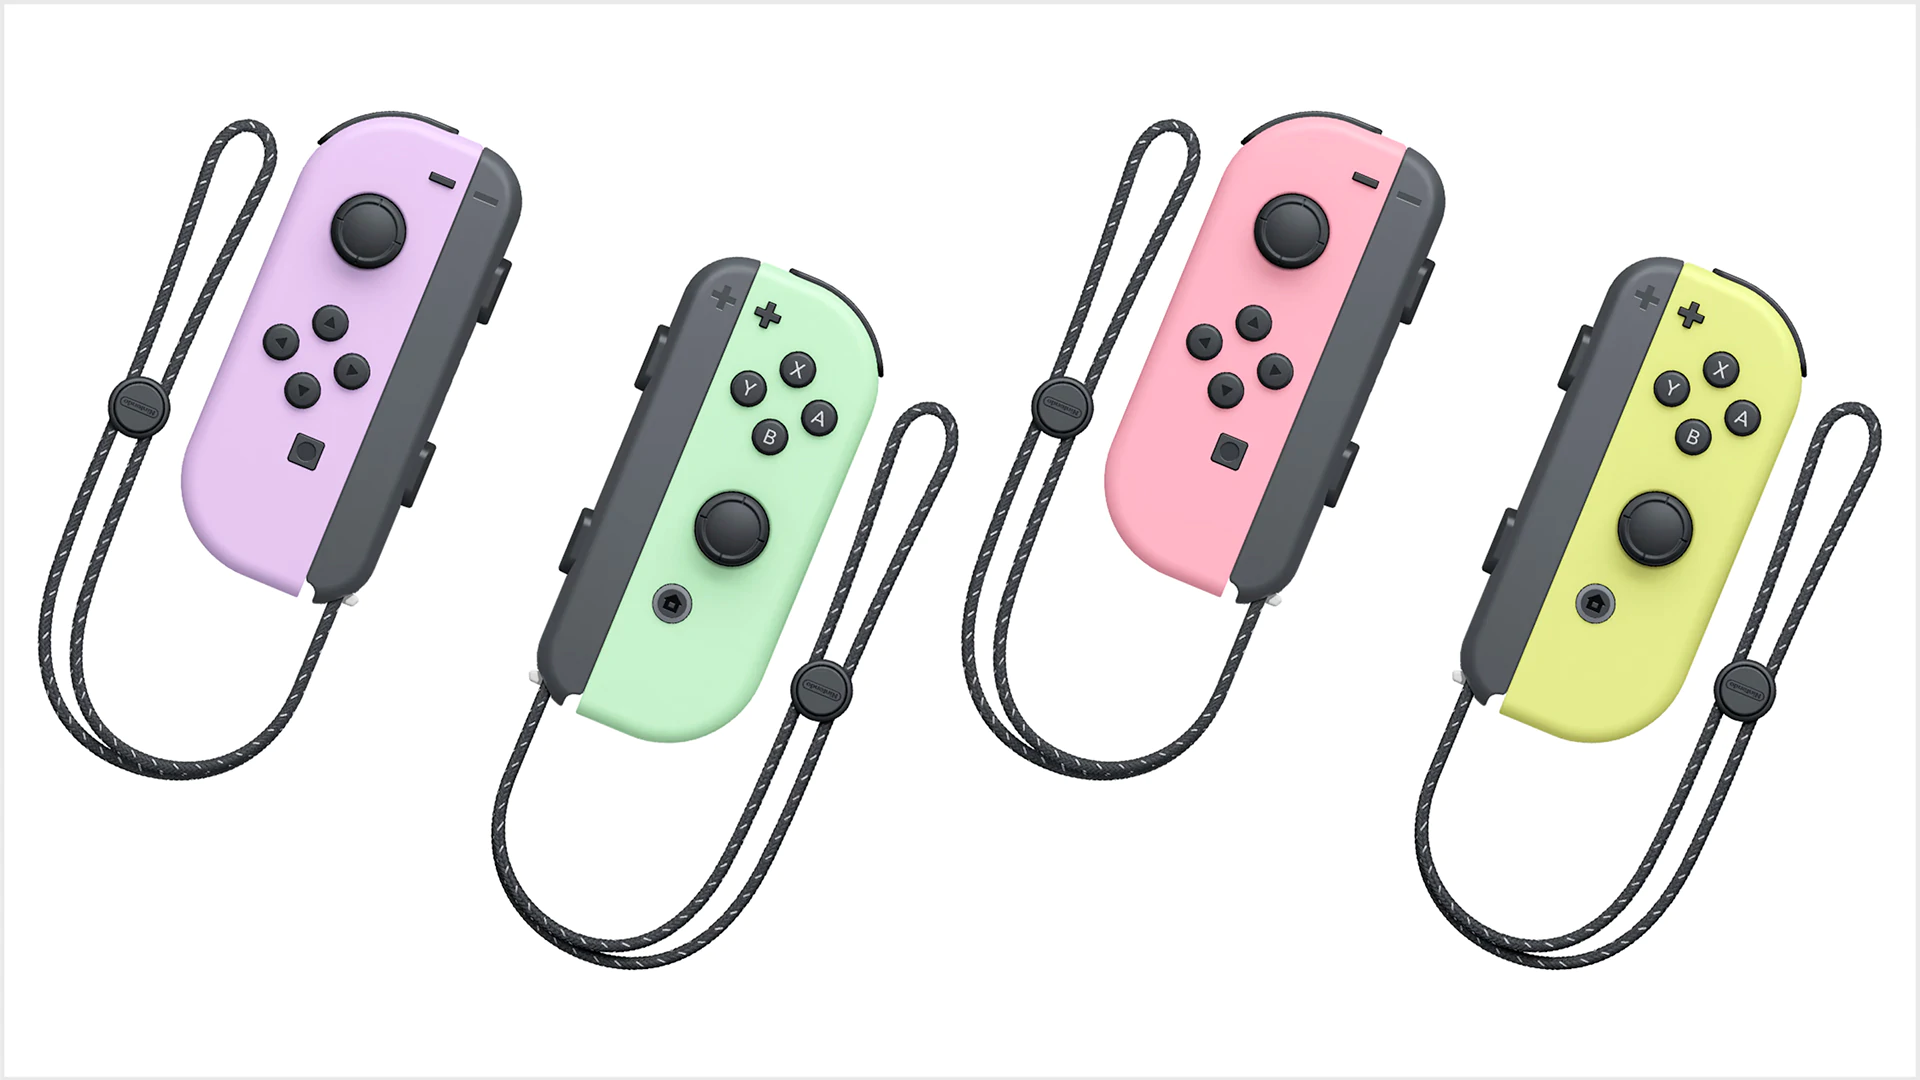 pastel joy cons 2 | Nintendo เปิดตัวและวางจำหน่าย Joy-Cons เซ็ตใหม่สีพาสเทลแล้ววันนี้ ราคา .99